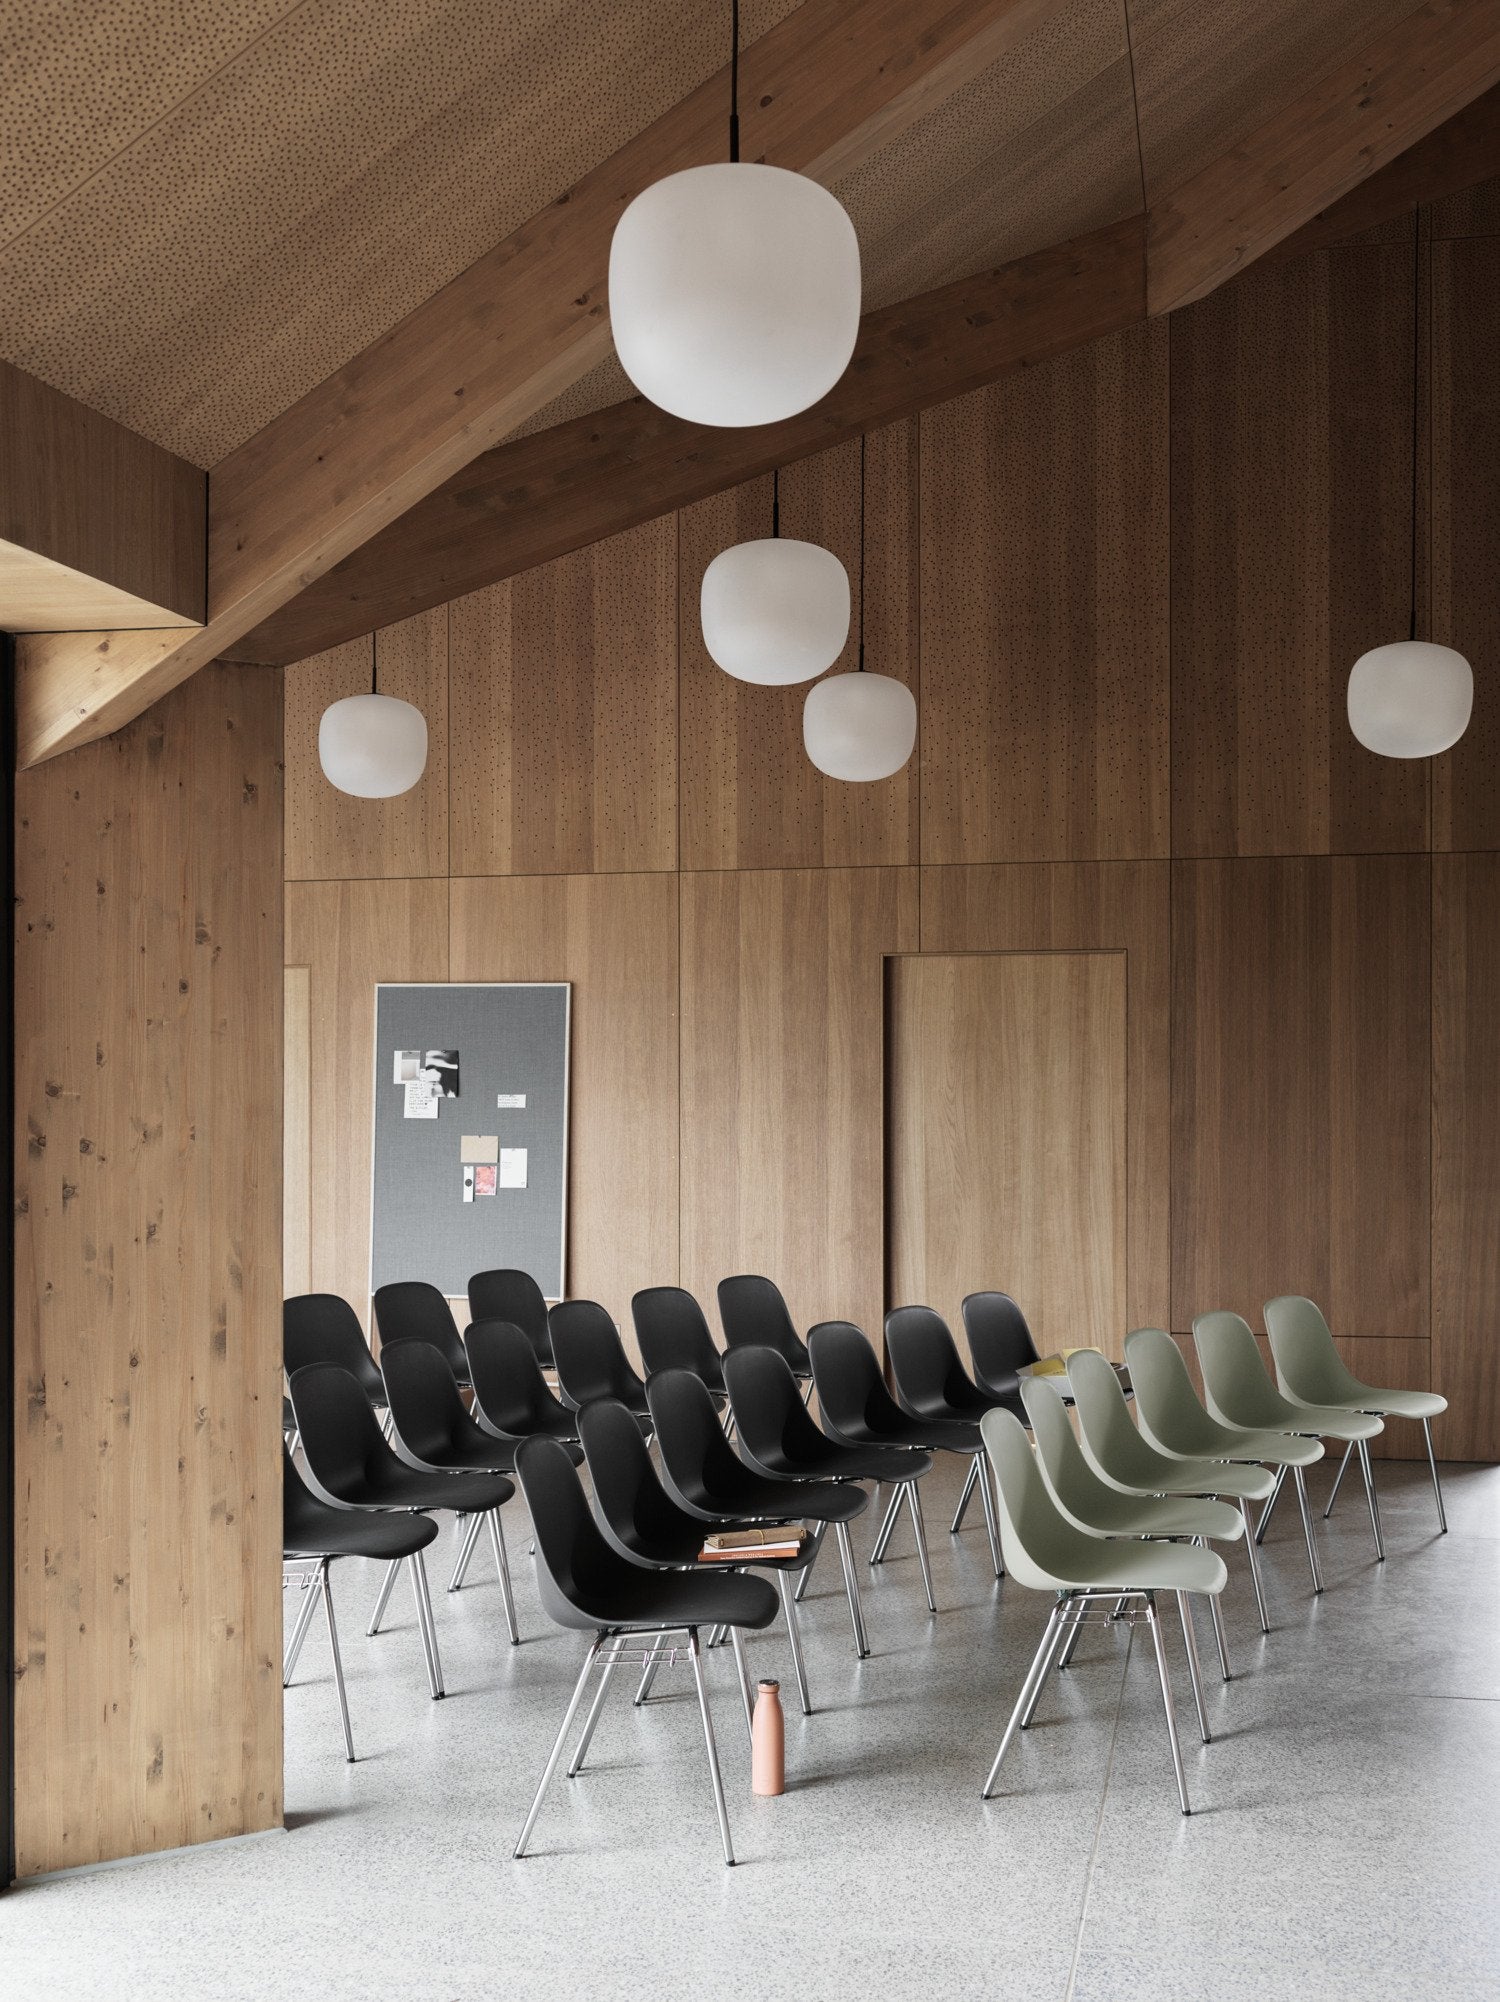 Fiber Side Stuhl in Schwarz / Chrom präsentiert im Onlineshop von KAQTU Design AG. Stuhl ist von Muuto